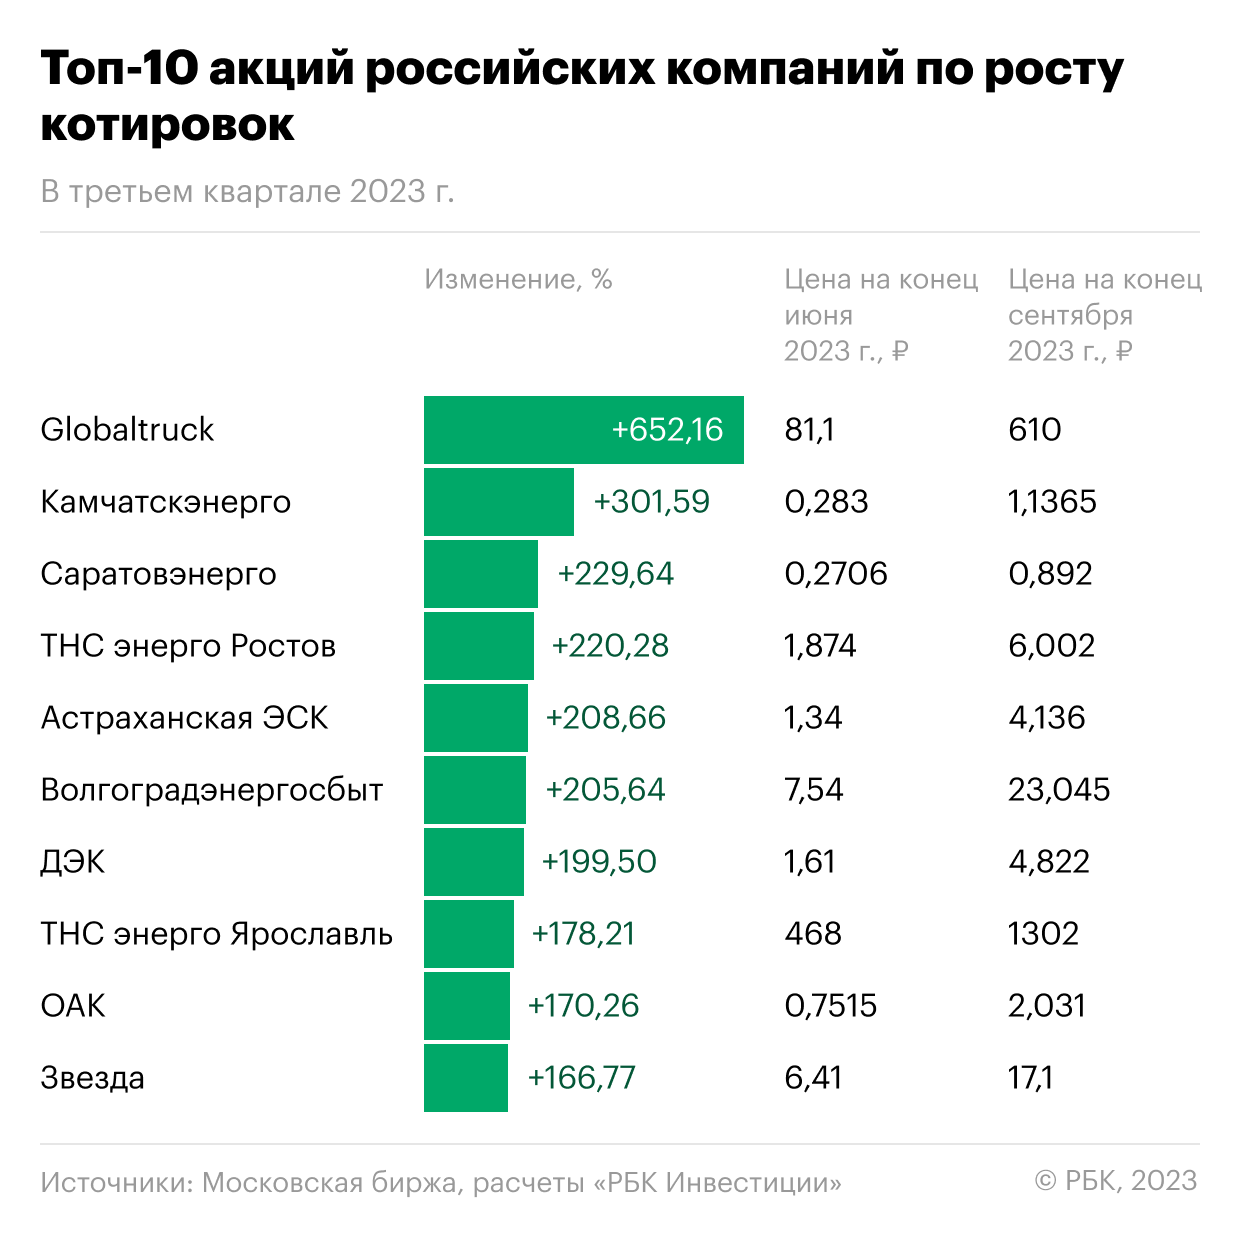 Лидеры роста котировок за третий квартал 2023 года среди акций российских компаний, торгующихся на Московской бирже